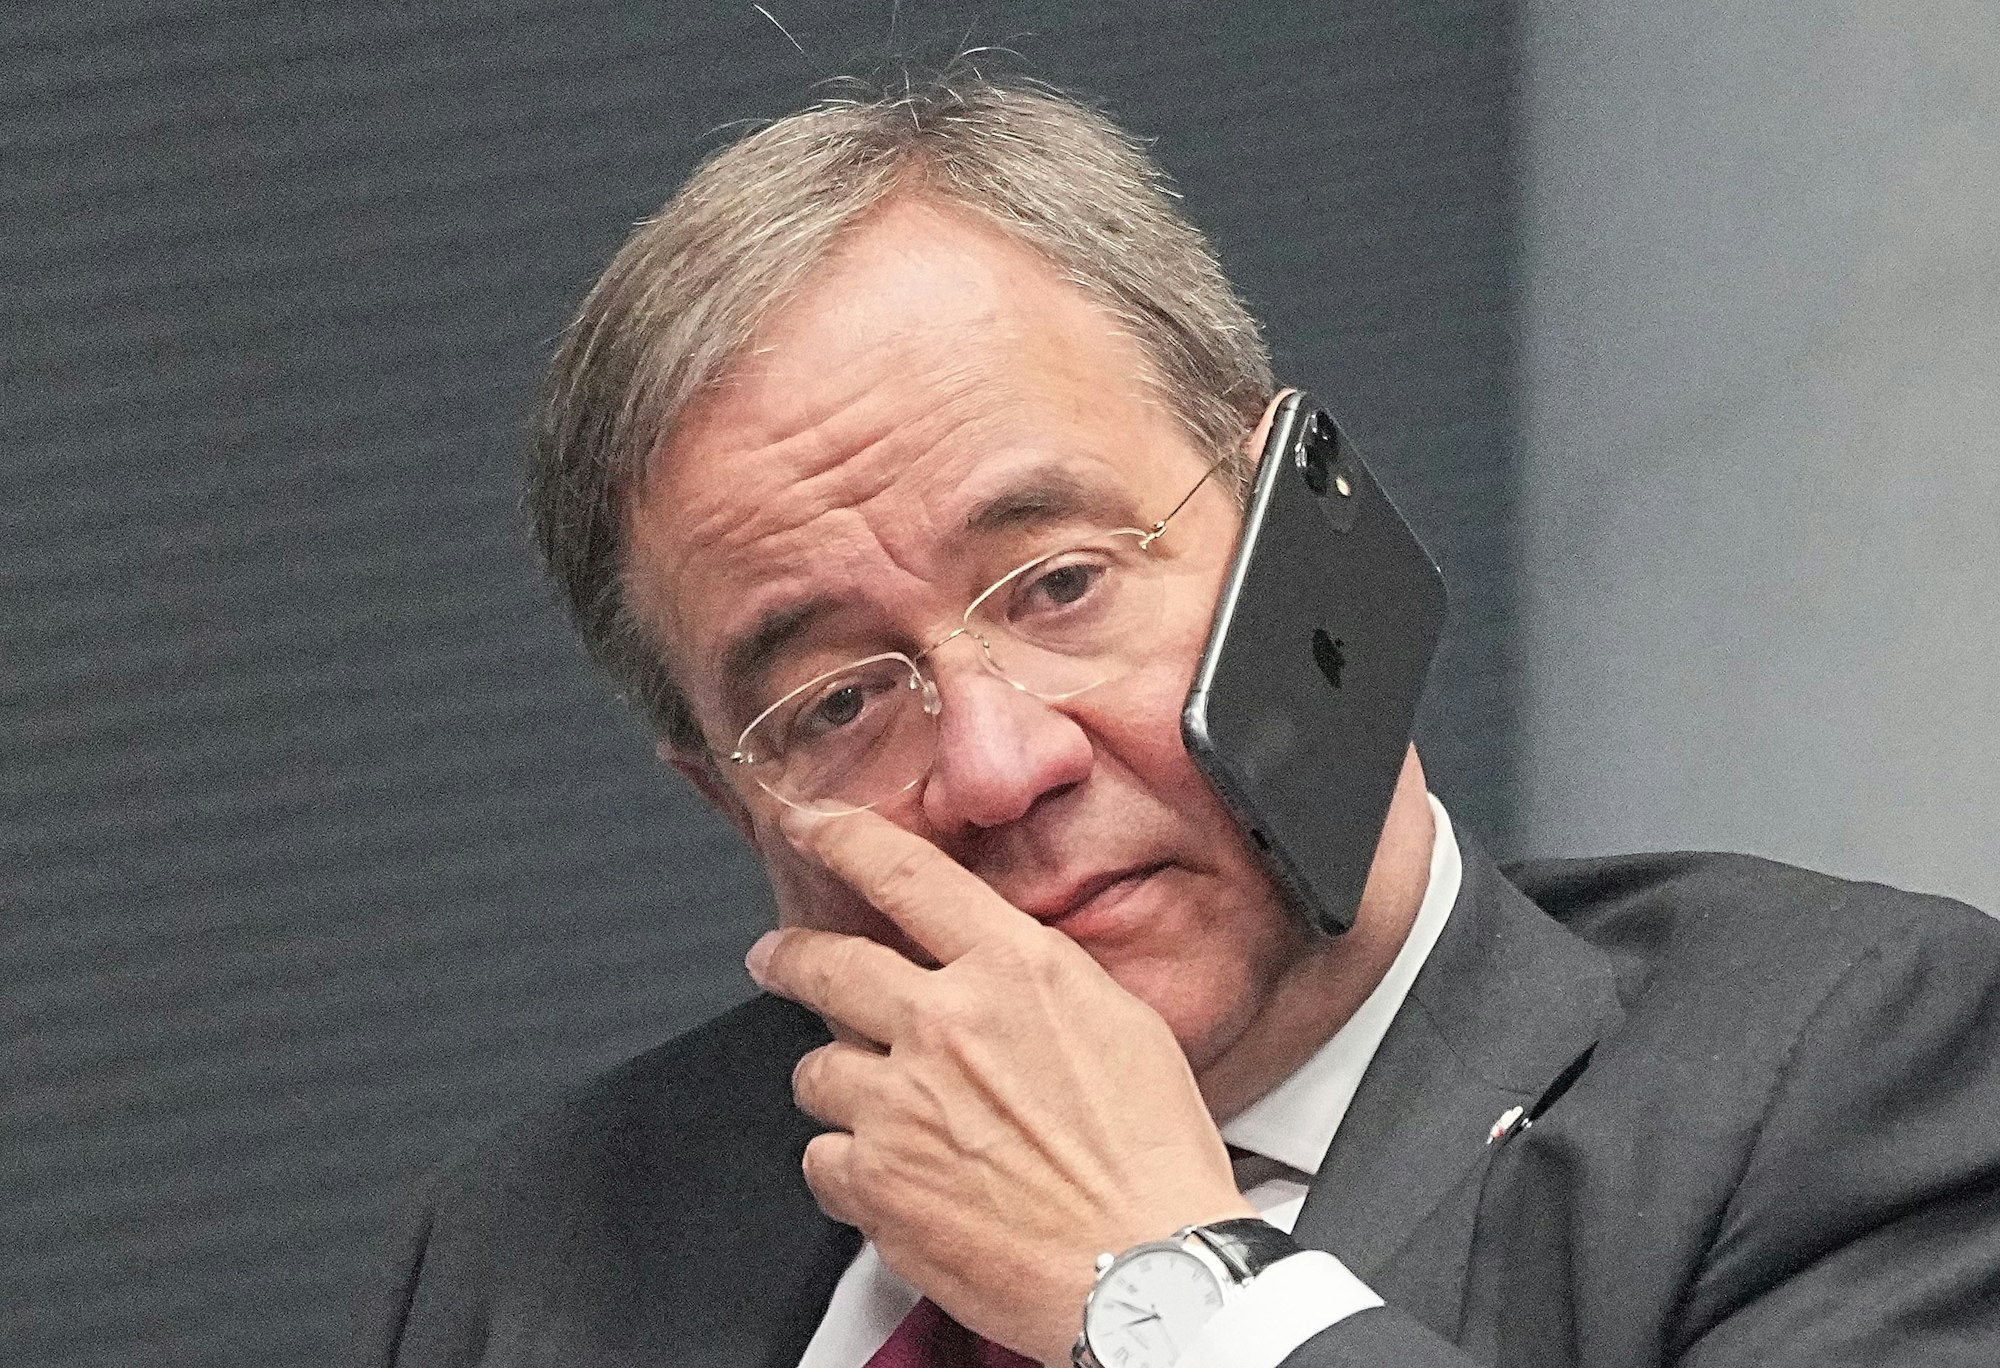 Bei der konstituierenden Sitzung des neuen Bundestags am 26. Oktober hat Armin Laschet telefoniert – ohne Hände. Das Foto sorgt für einige Fragezeichen.